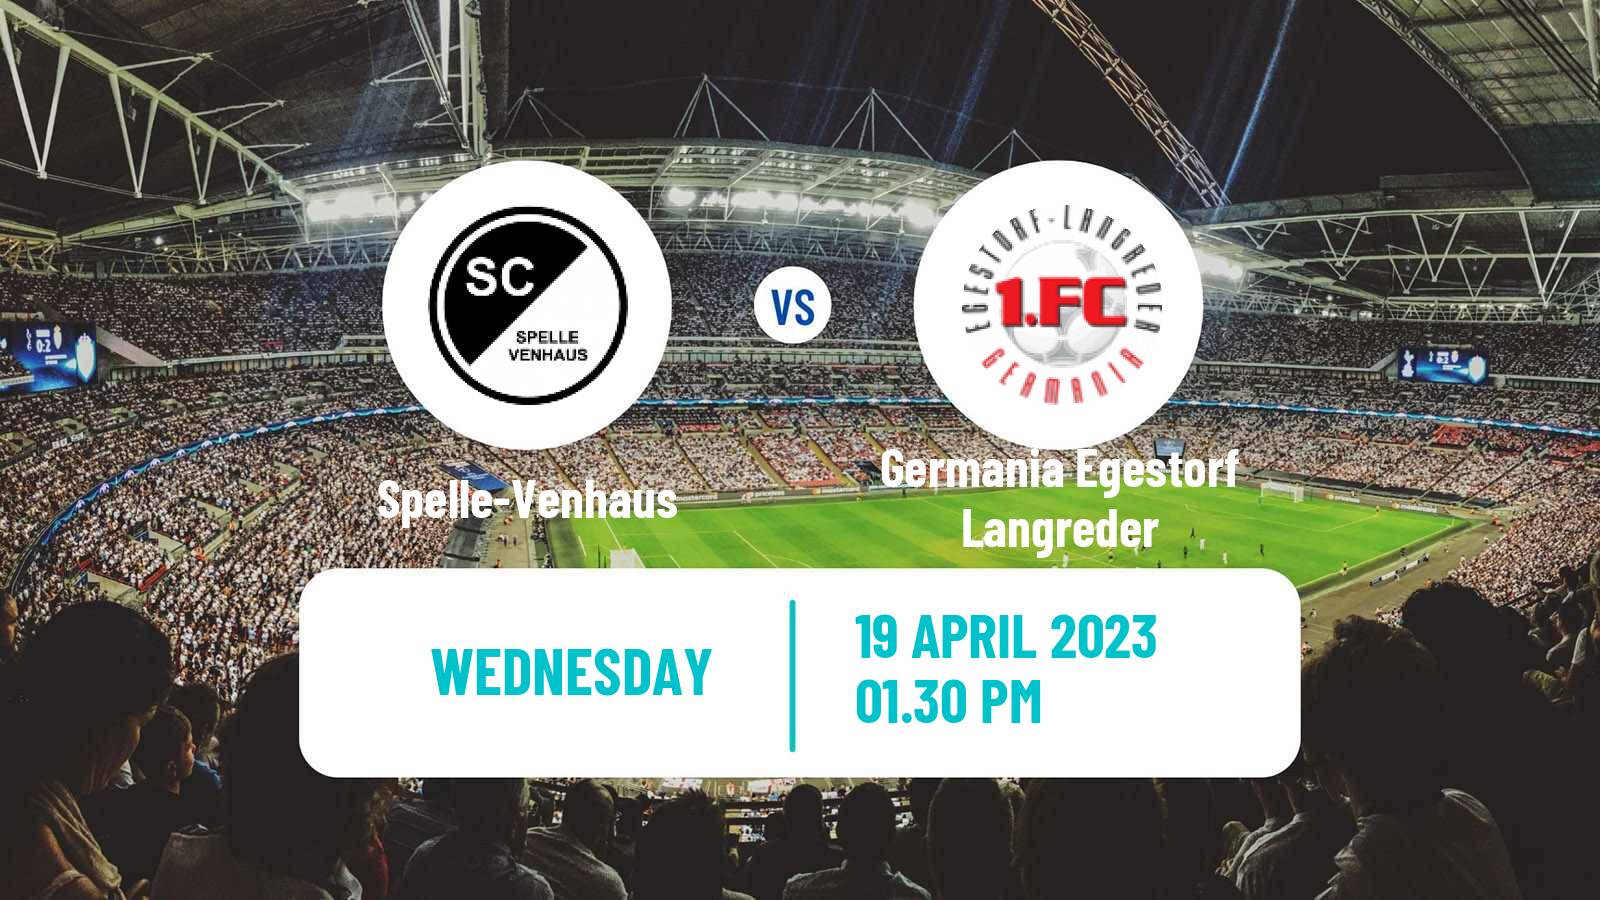 Soccer German Oberliga Niedersachsen Spelle-Venhaus - Germania Egestorf Langreder